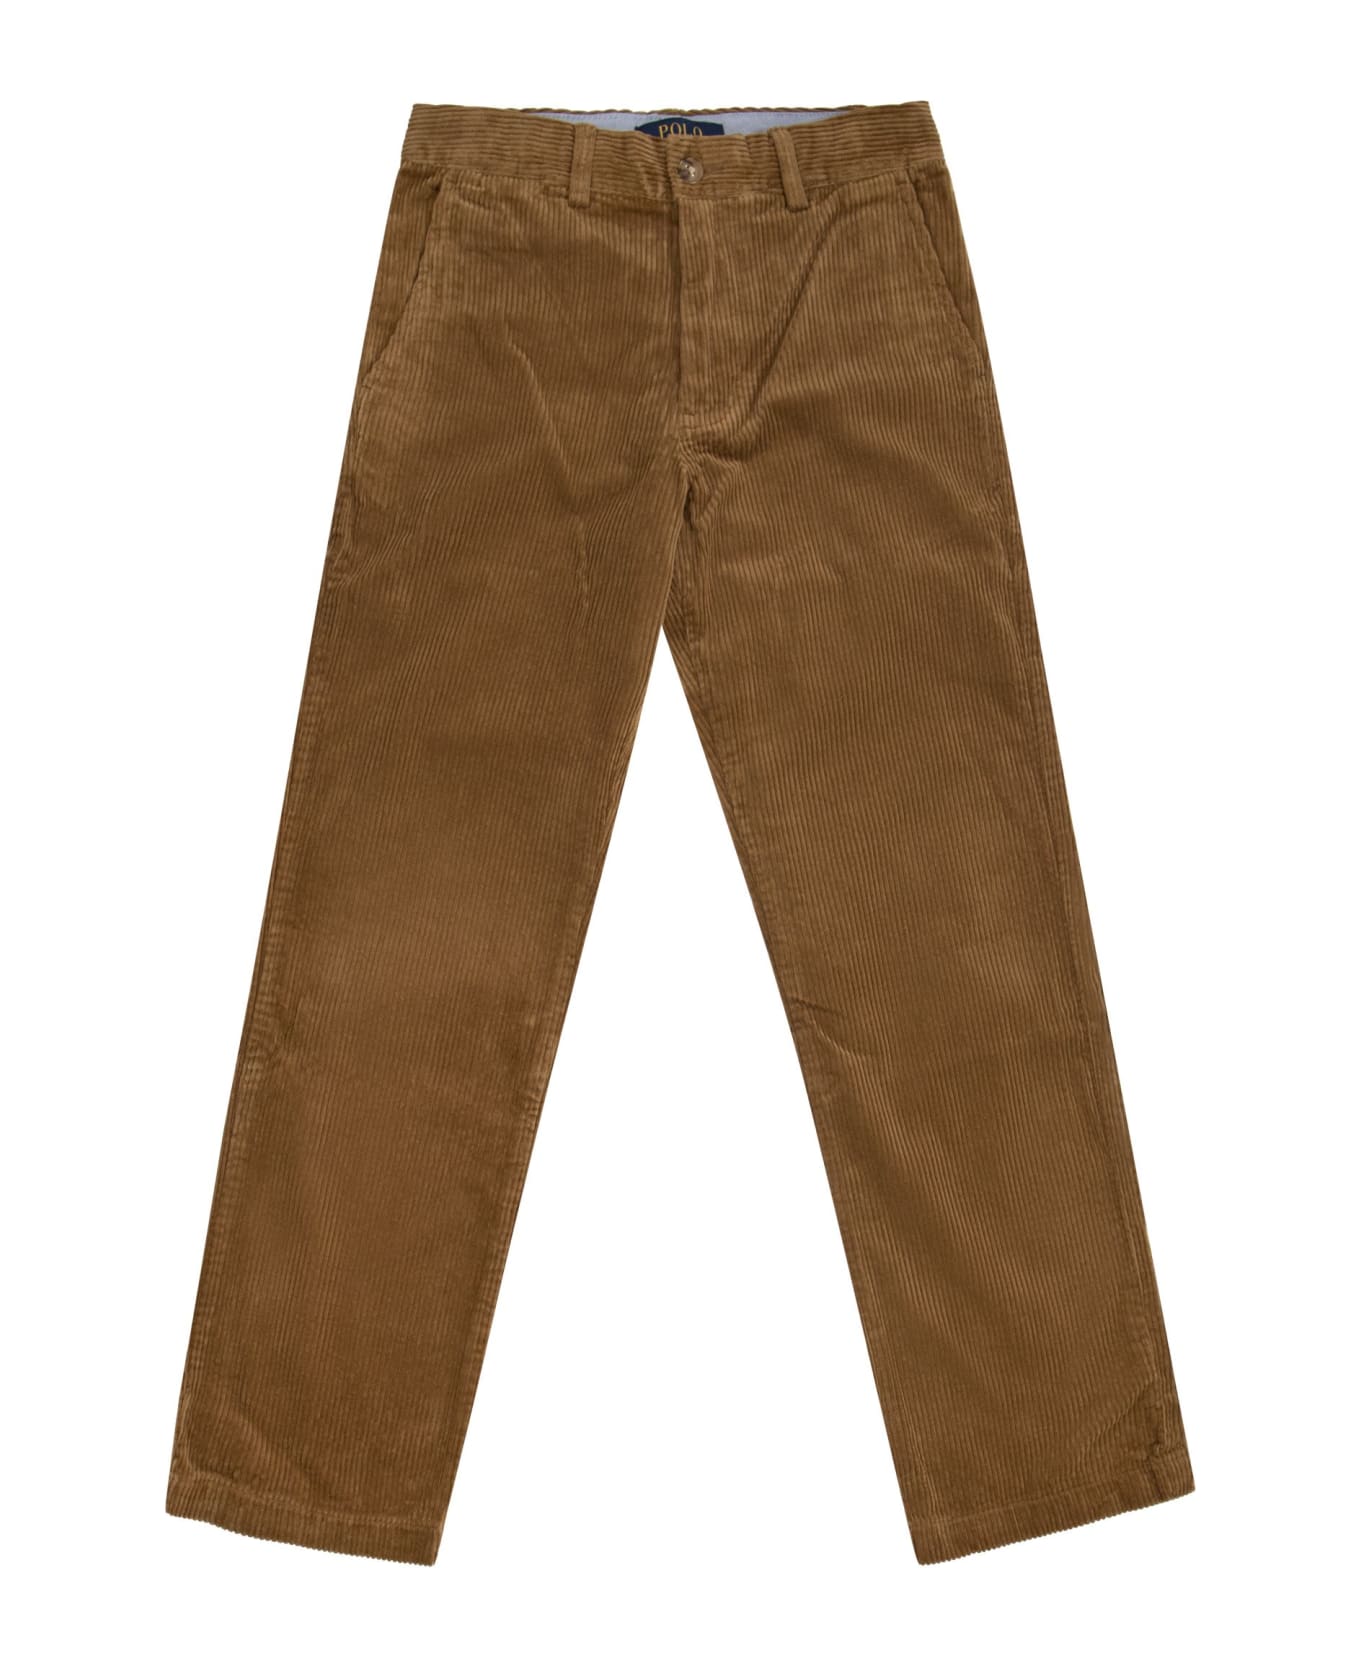 Polo Ralph Lauren Cotton Corduroy Trousers - Chestnut